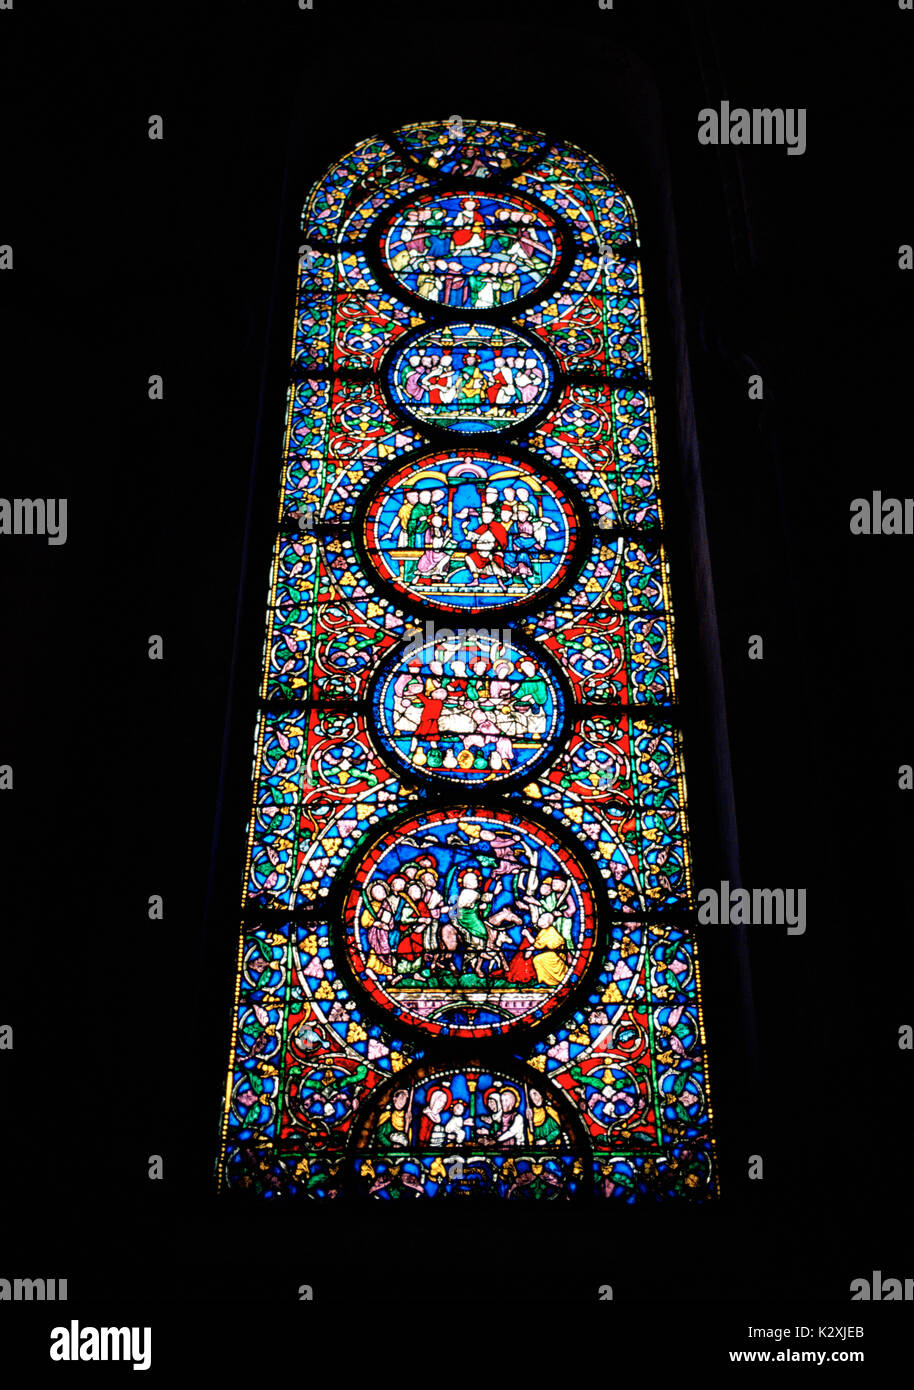 Finestra di vetro colorato nella cattedrale di Canterbury nella città di Canterbury nel Kent in Inghilterra in Gran Bretagna nel Regno Unito Regno Unito Europa. il vetro macchiato Foto Stock